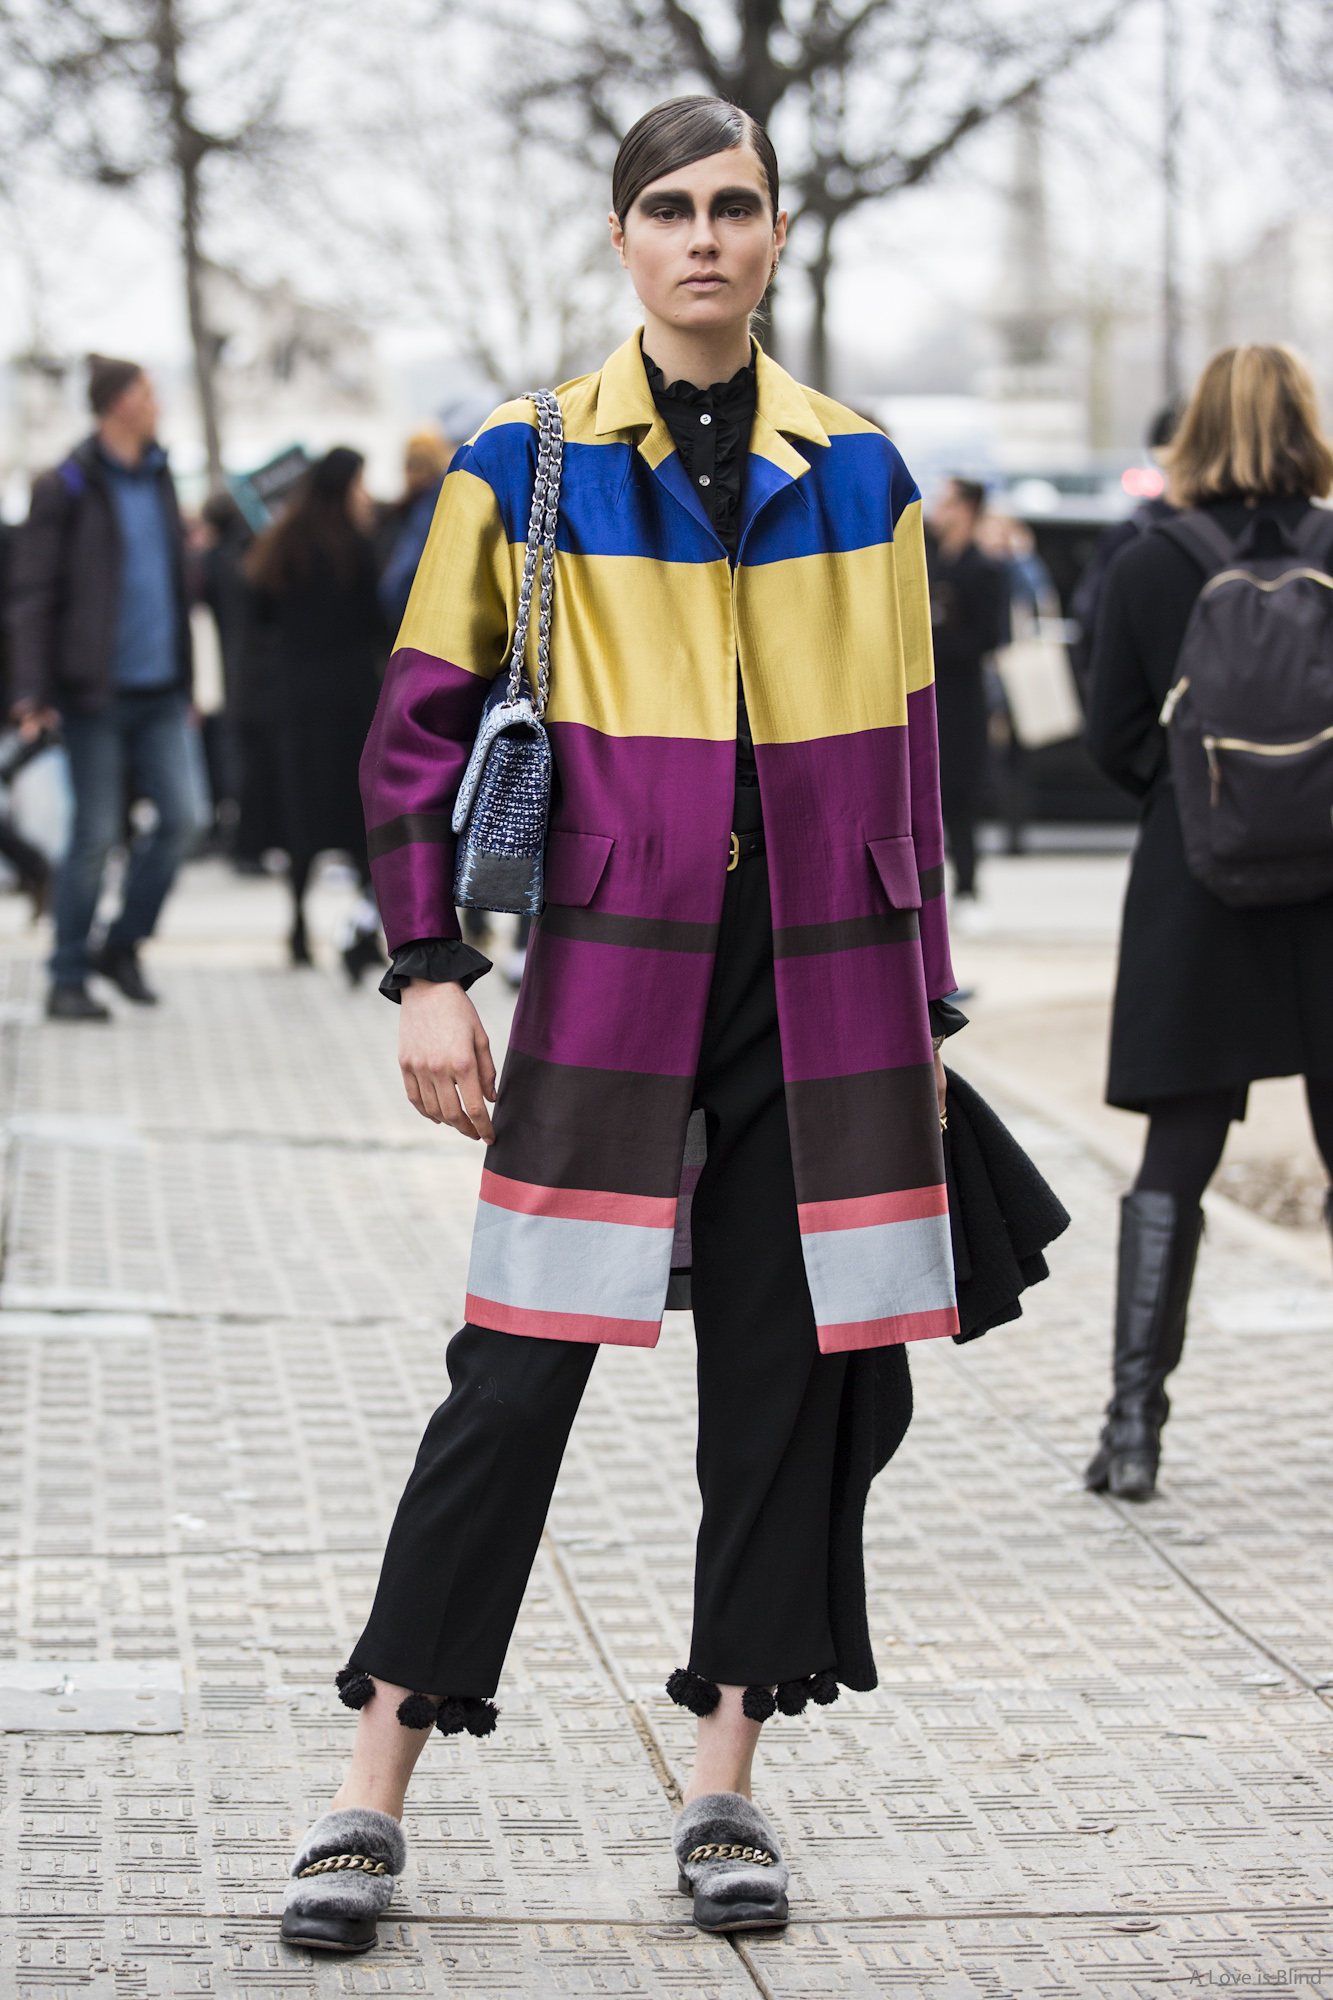 Paris Fashionweek day 7 – Sandra Semburg